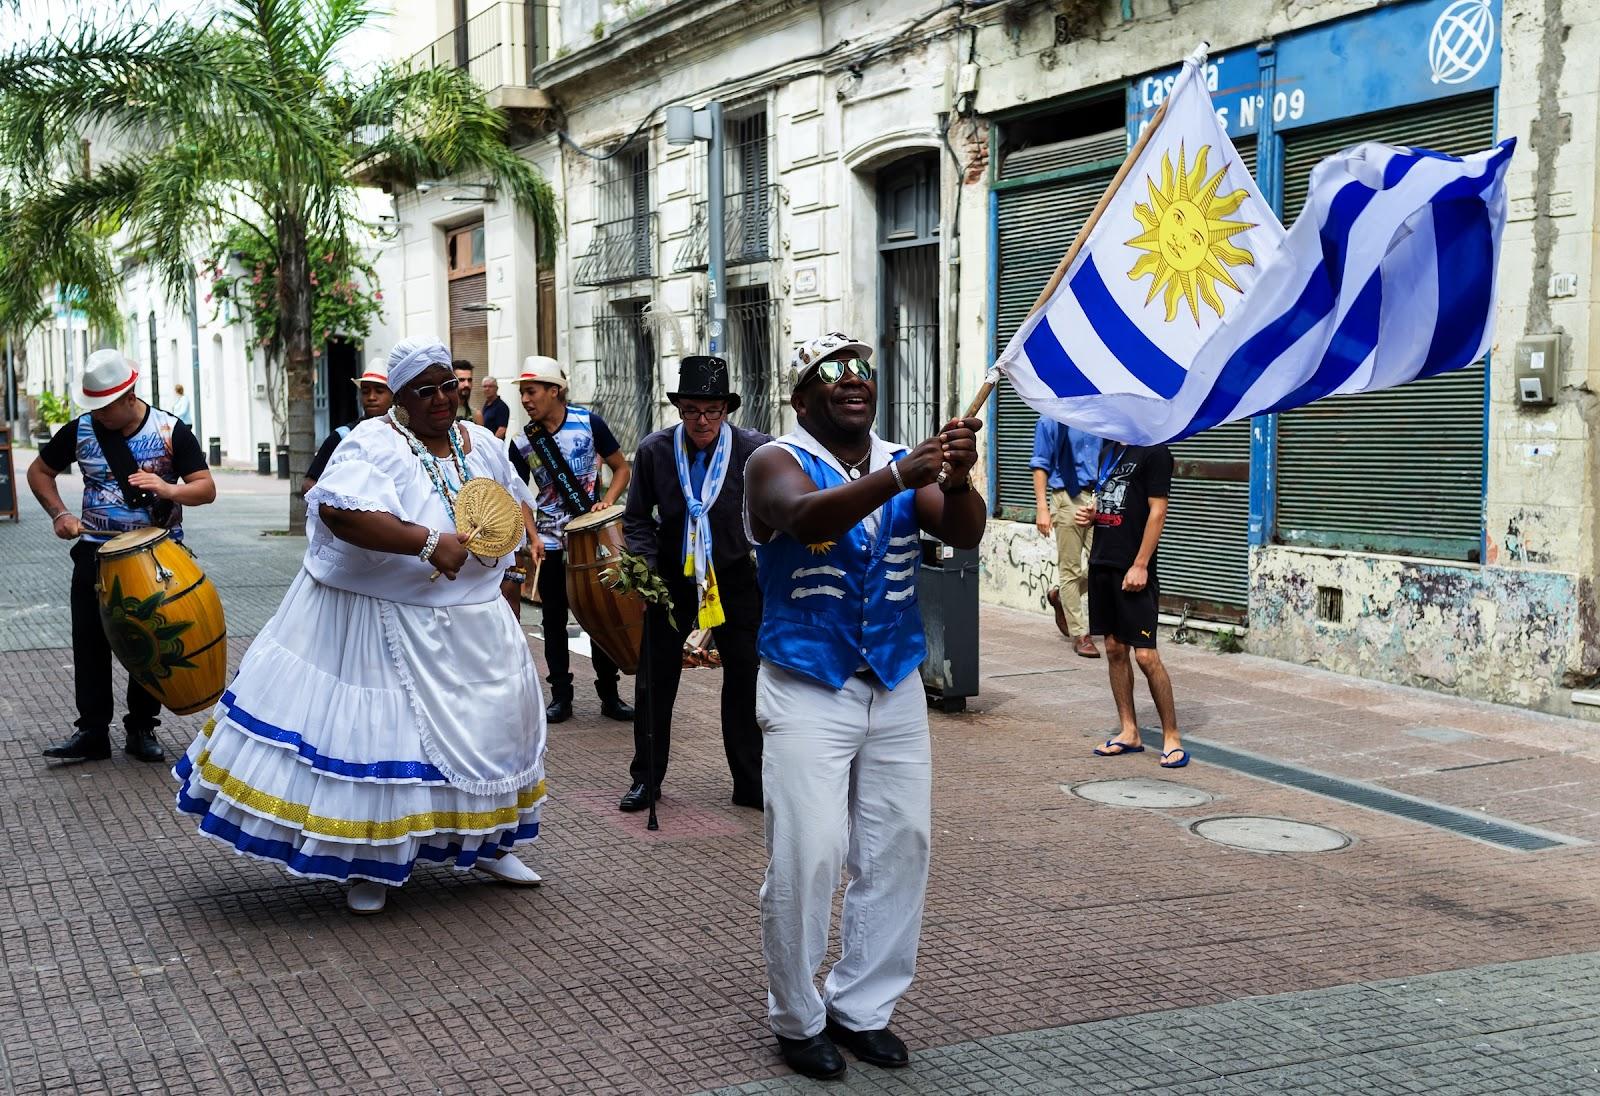 A Uruguayan festival.